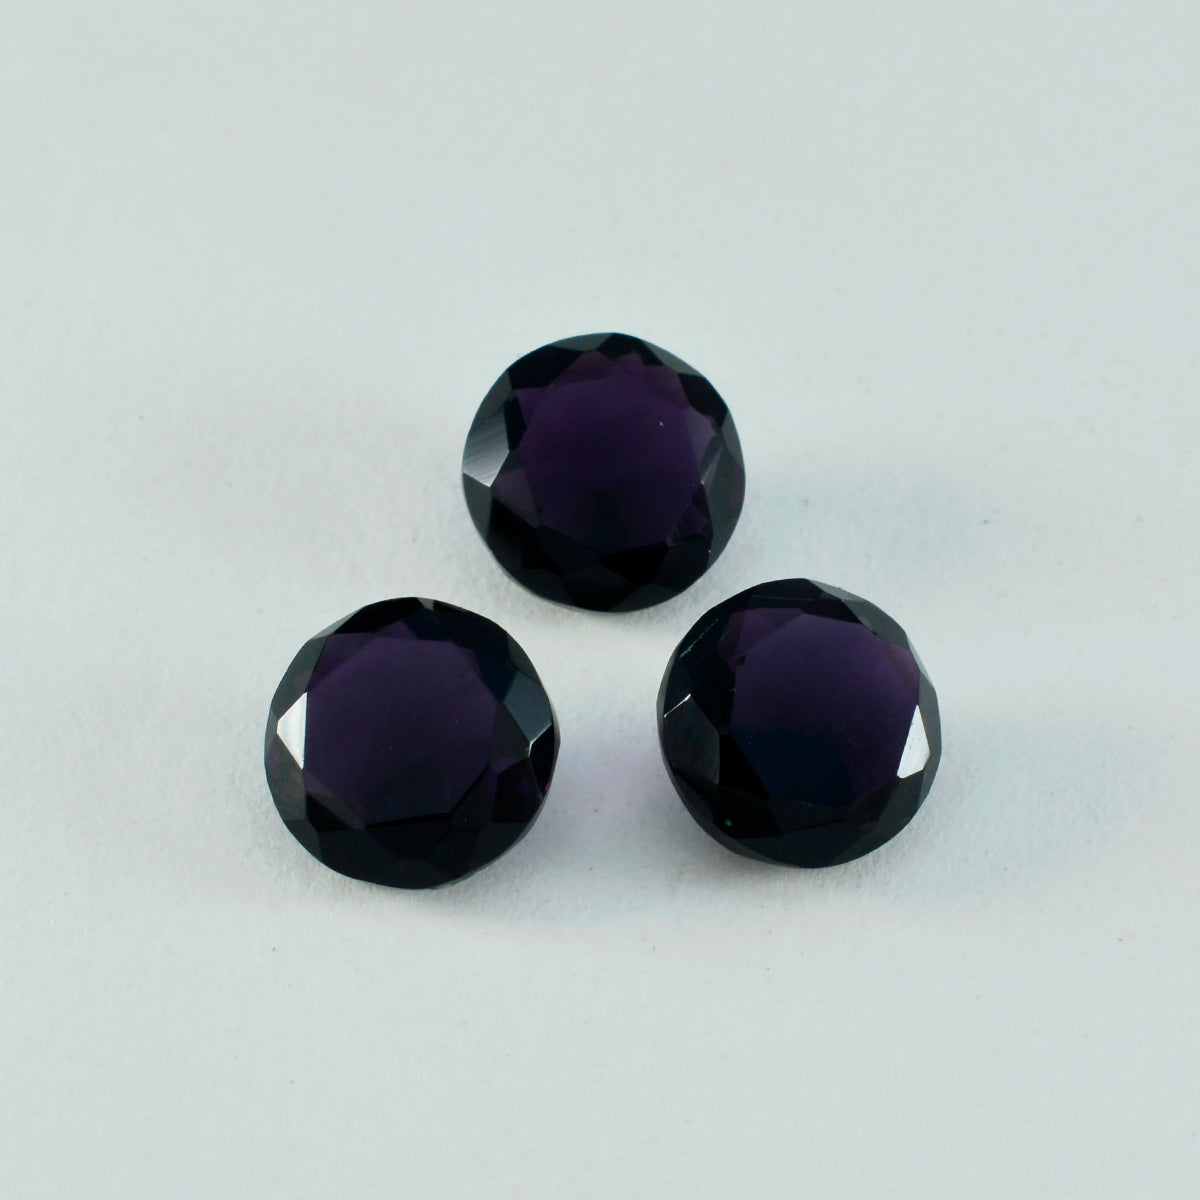 Riyogems 1pc améthyste violette cz facettes 15x15mm forme ronde grande qualité pierres précieuses en vrac